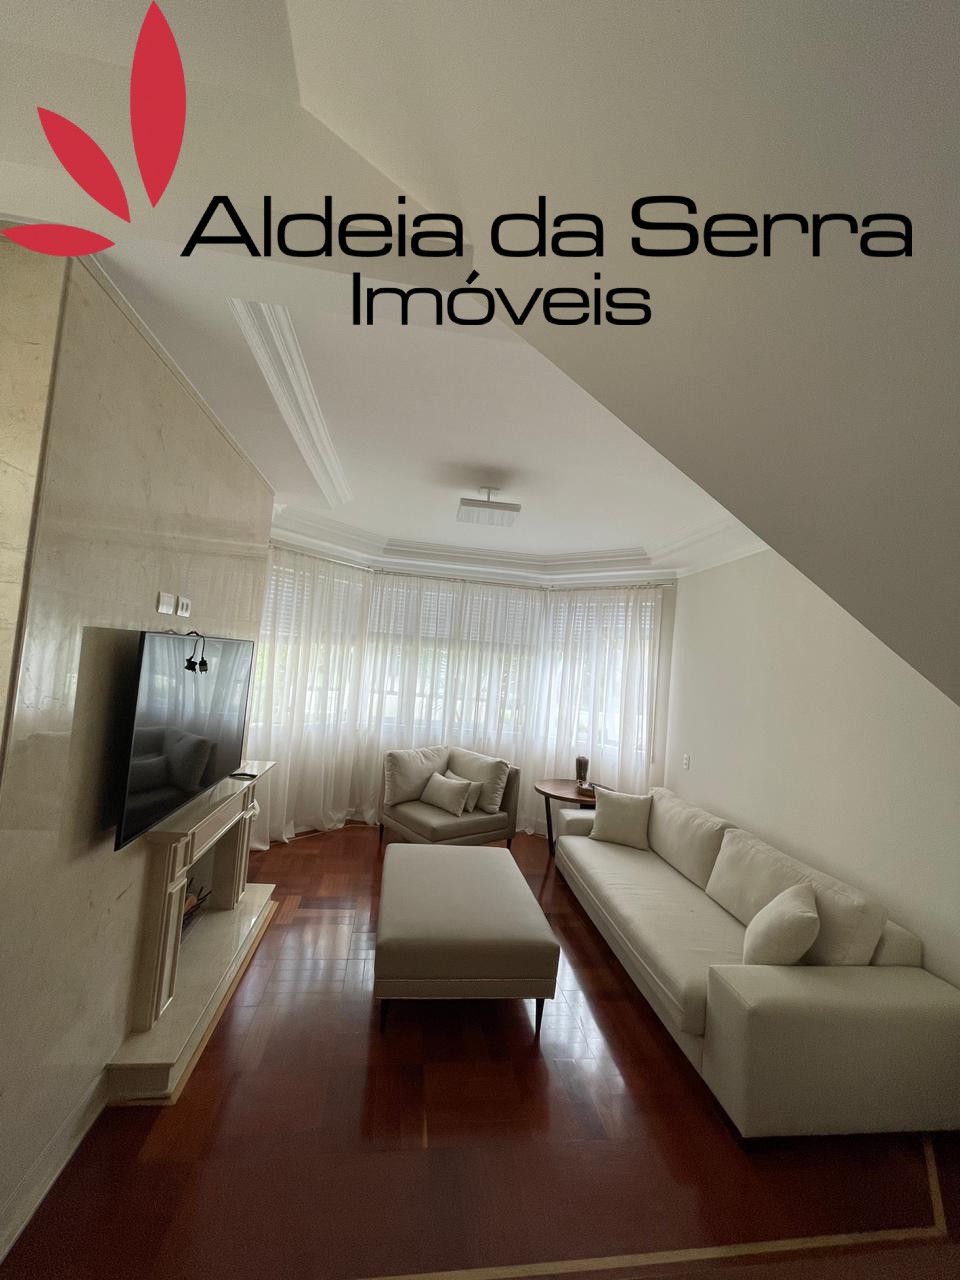 /admin/imoveis/fotos/IMG-20210614-WA0026.jpg Aldeia da Serra Imoveis